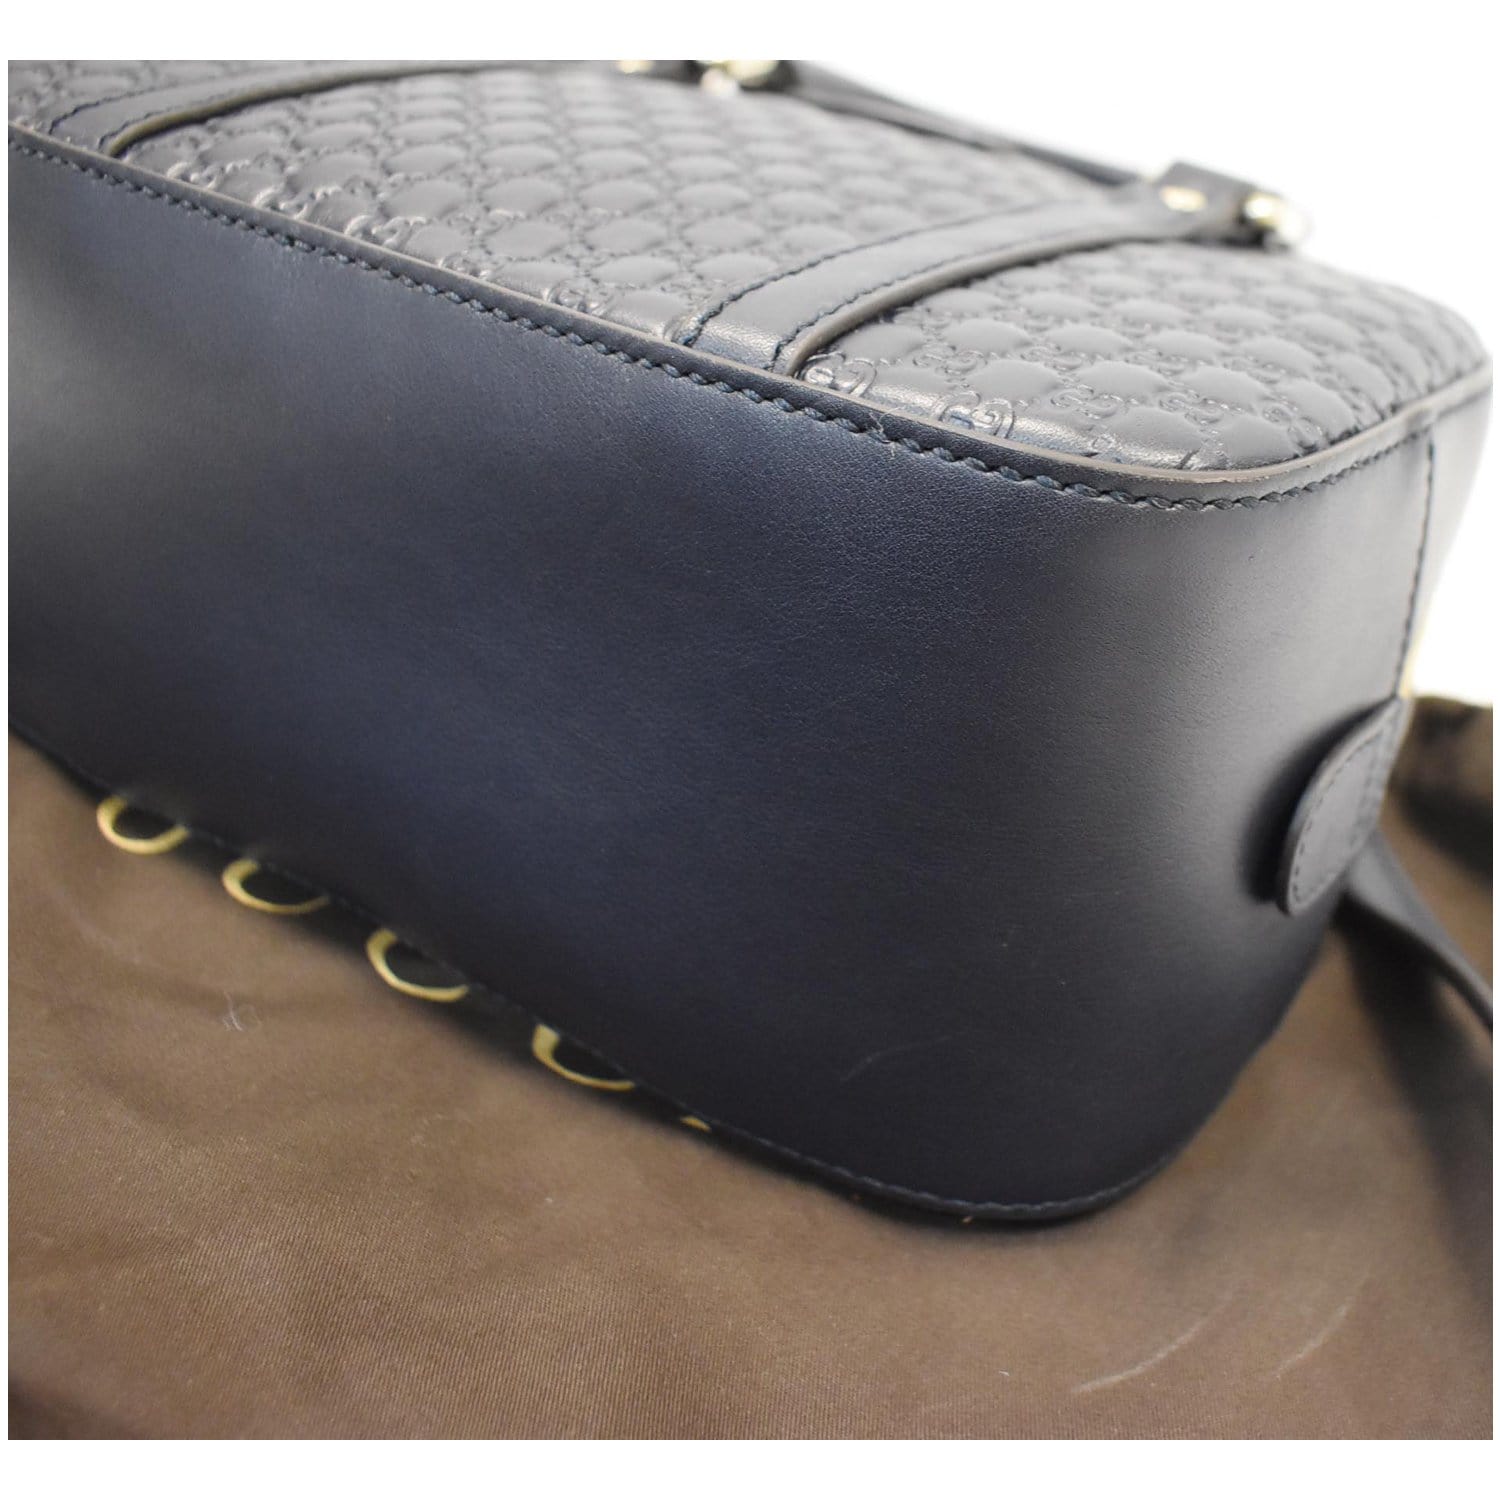 Gucci 449654 Microguccissima Leather Mini Dome Satchel Bag in Blue